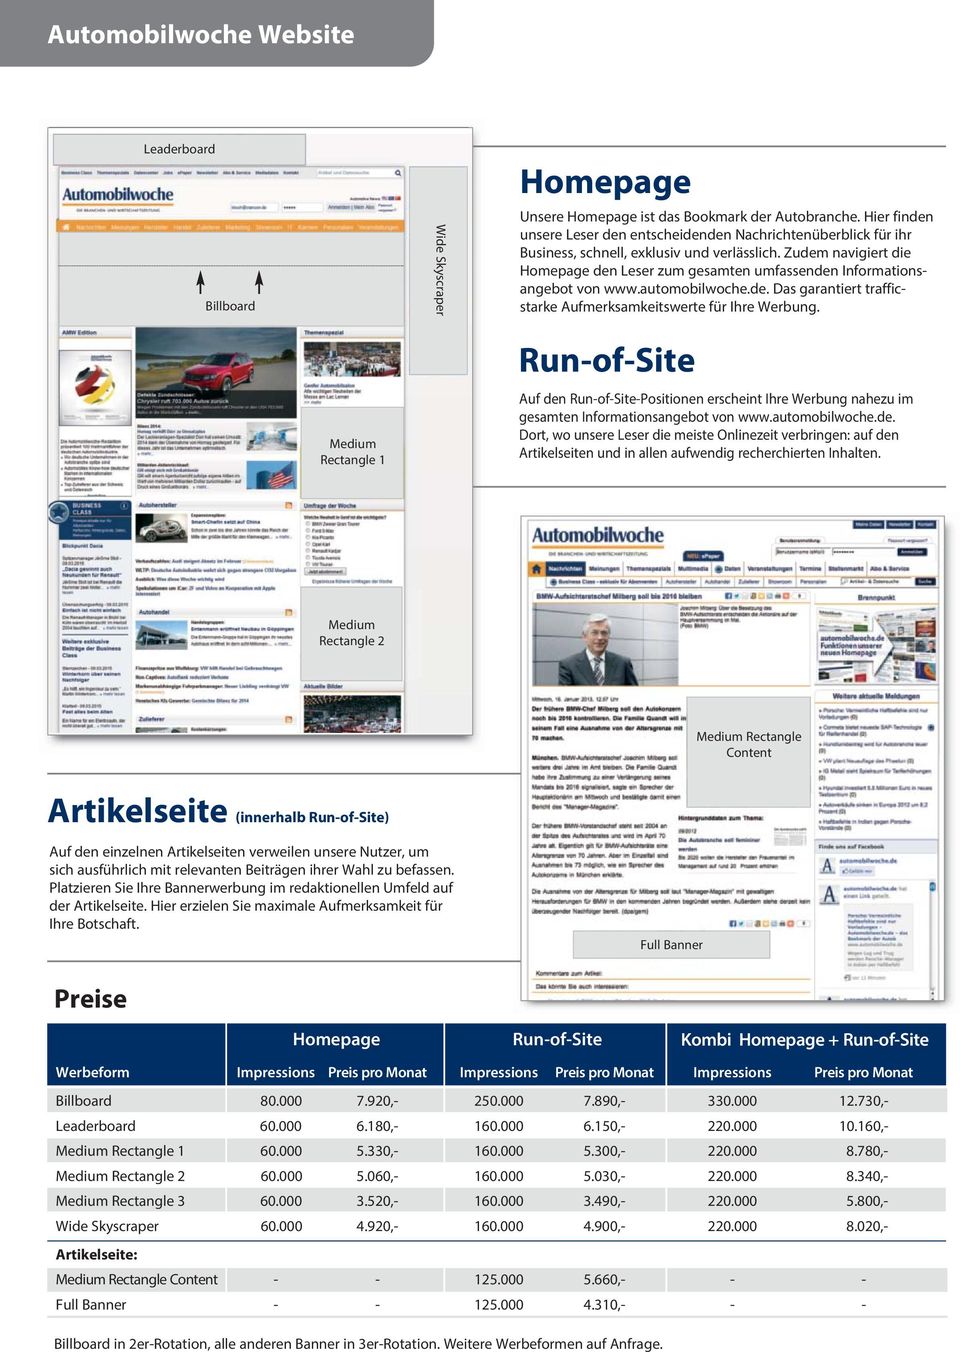 Zudem navigiert die Homepage den Leser zum gesamten umfassenden Infor mations - angebot von www.automobilwoche.de. Das garantiert trafficstarke Aufmerksamkeitswerte für Ihre Werbung.